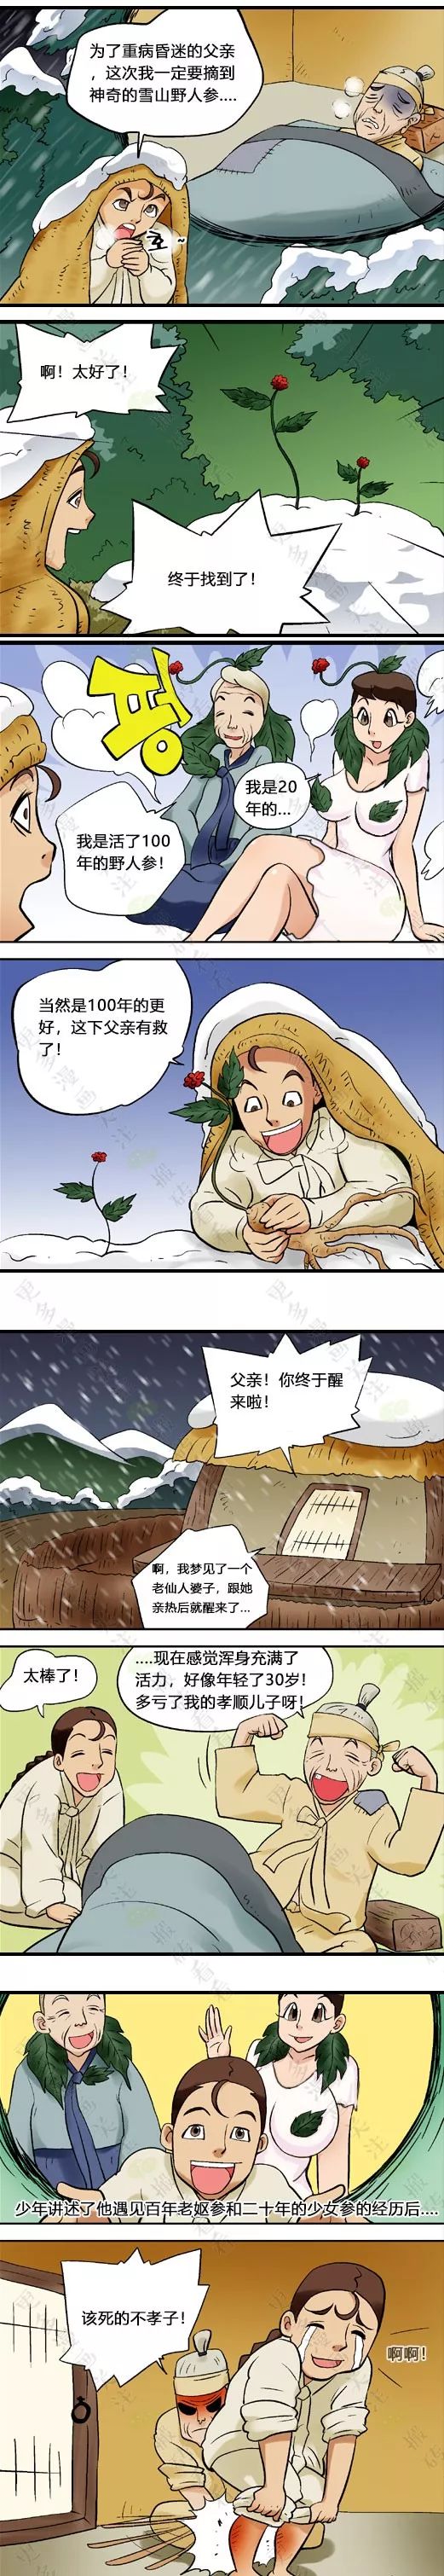 【短篇漫画】雪山女人参的诡谈_梦里